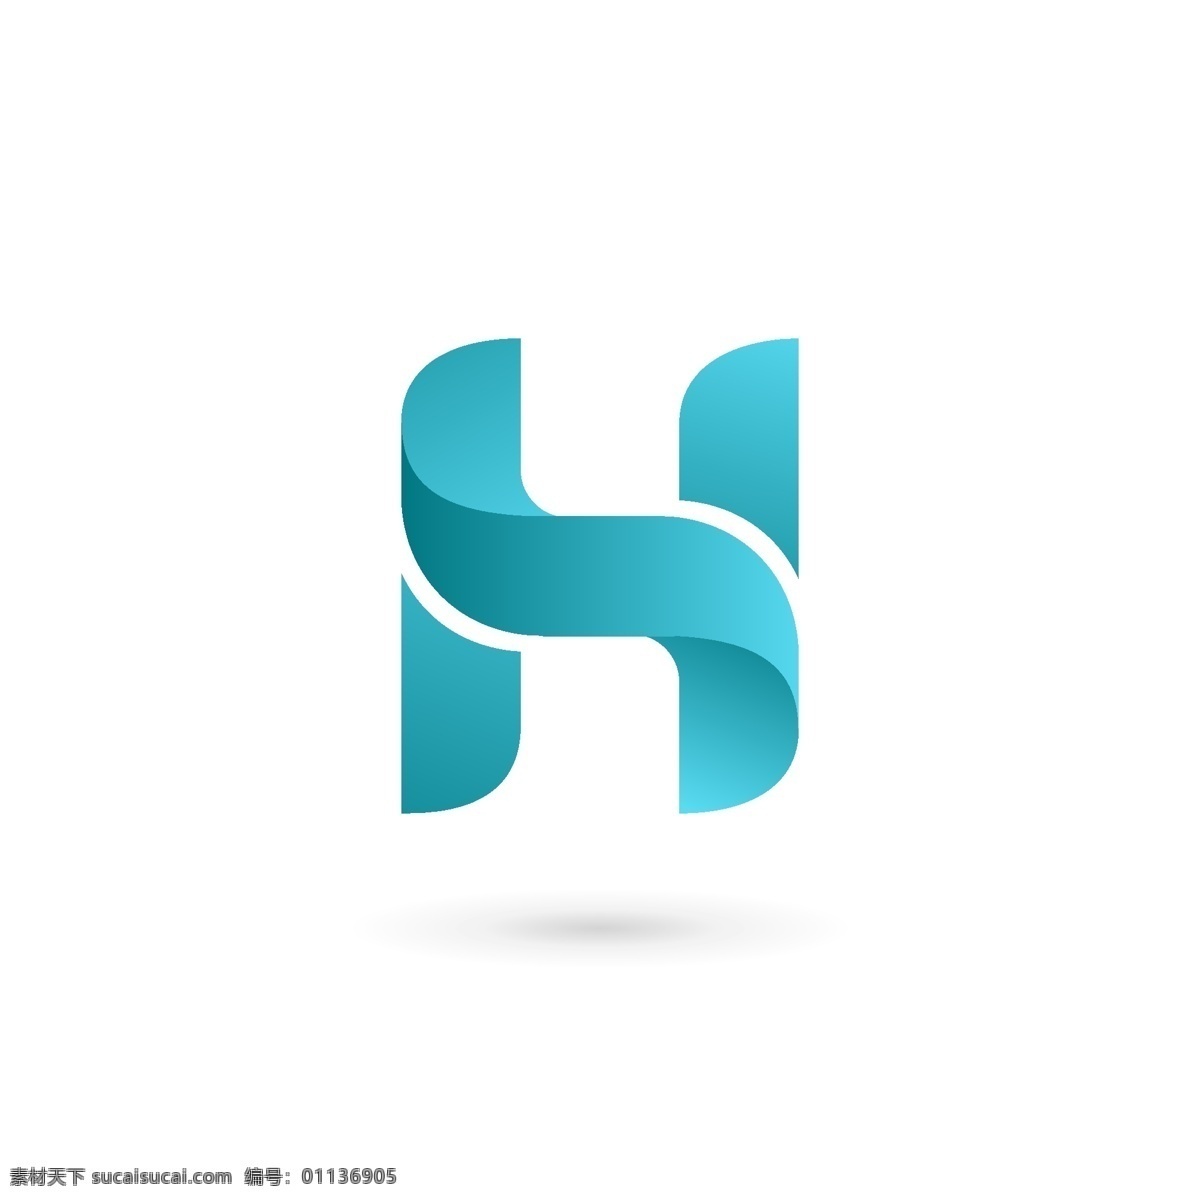 英文 字母 造型 logo 互联网 企业 科技 标志 创意 广告 简约 科技logo 领域 多用途 标识 公司 企业标识 企业logo